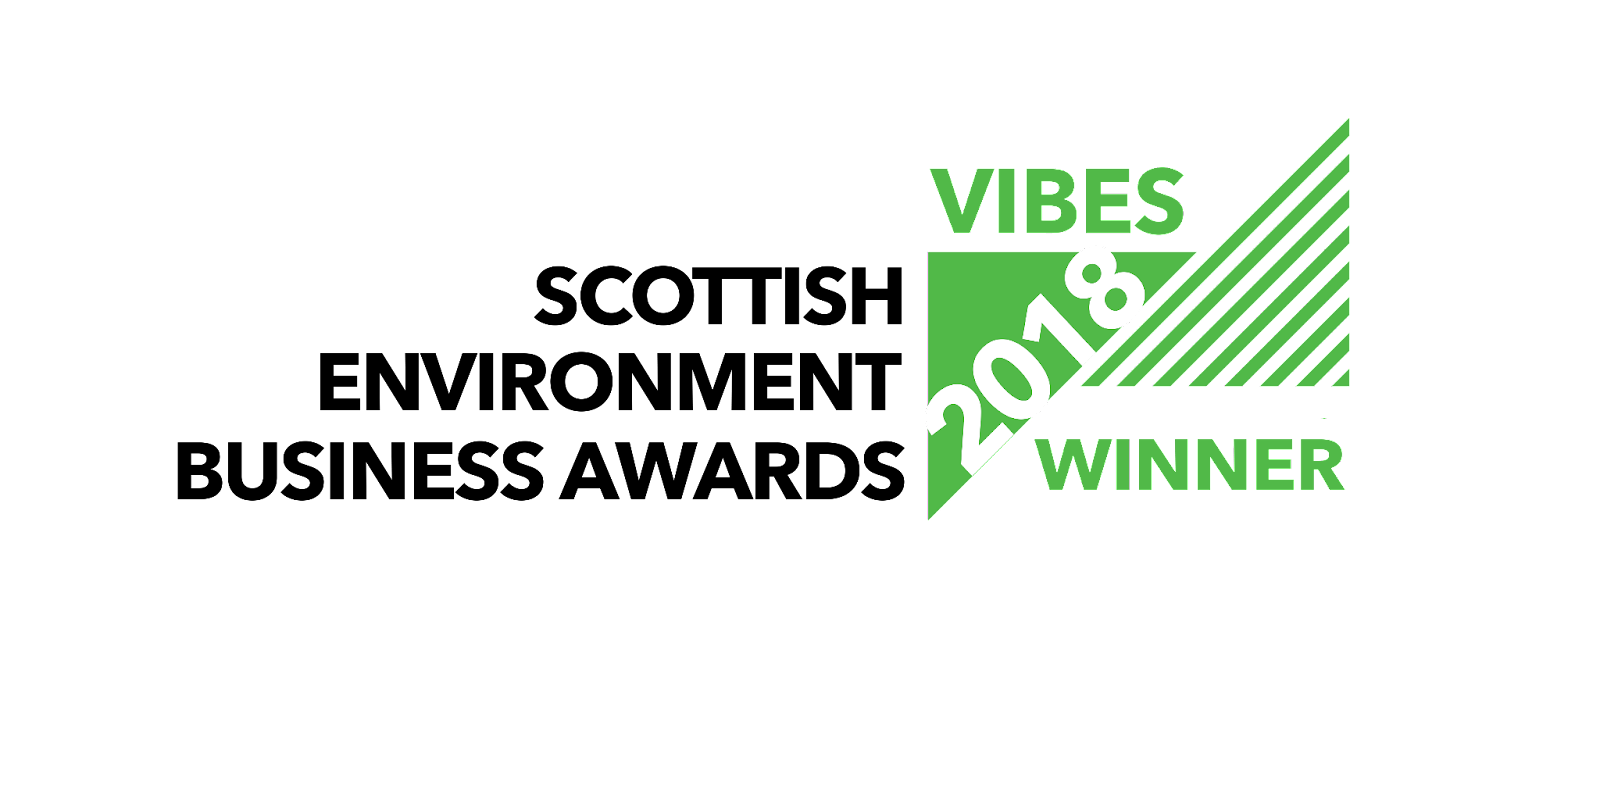 Scottish Environment Business Awards VIBES 2018 Winner